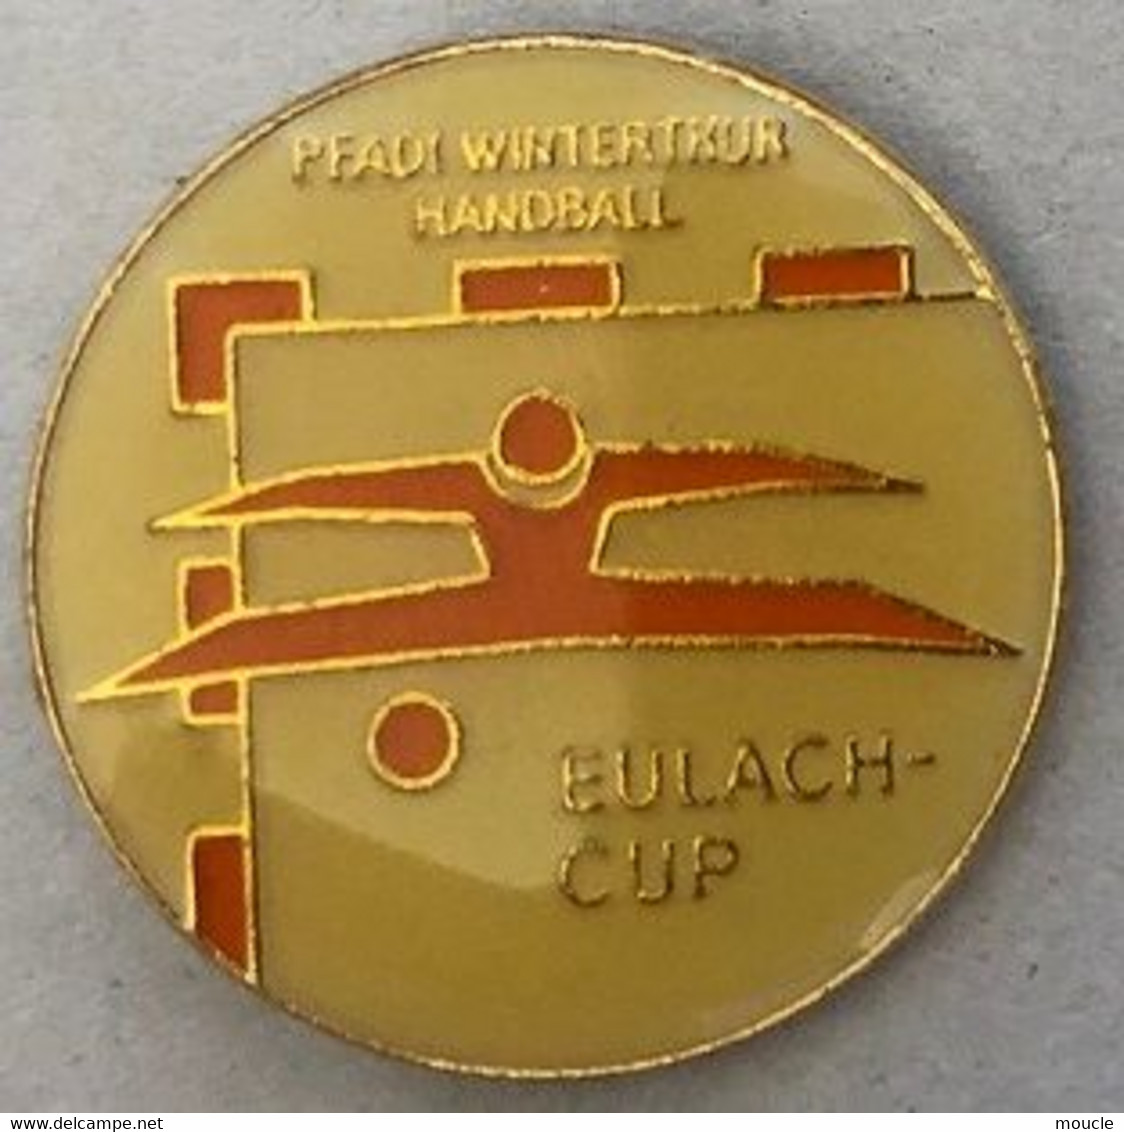 PFADI WINTERTHUR HANDBALL - WINTERTHOUR - CANTON DE ZURICH - SUISSE - SCHWEIZ - SWITZERLAND - EULACH CUP -  (27) - Balonmano